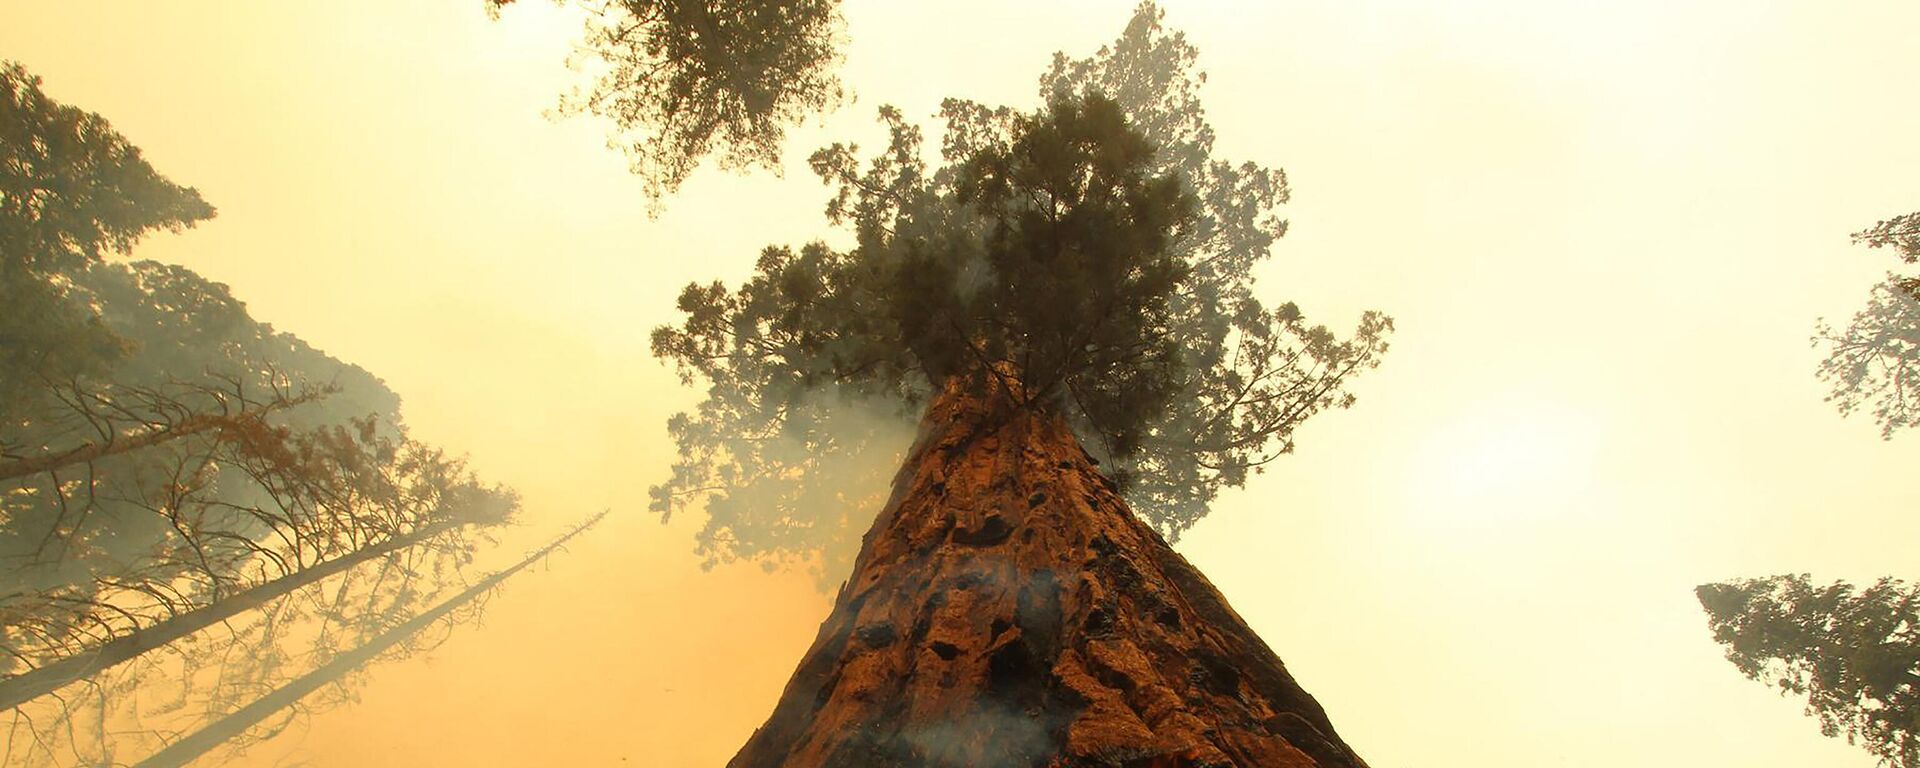 Горящее дерево в Национальном парке Секвойя в Калифорнии - Sputnik Азербайджан, 1920, 01.11.2021